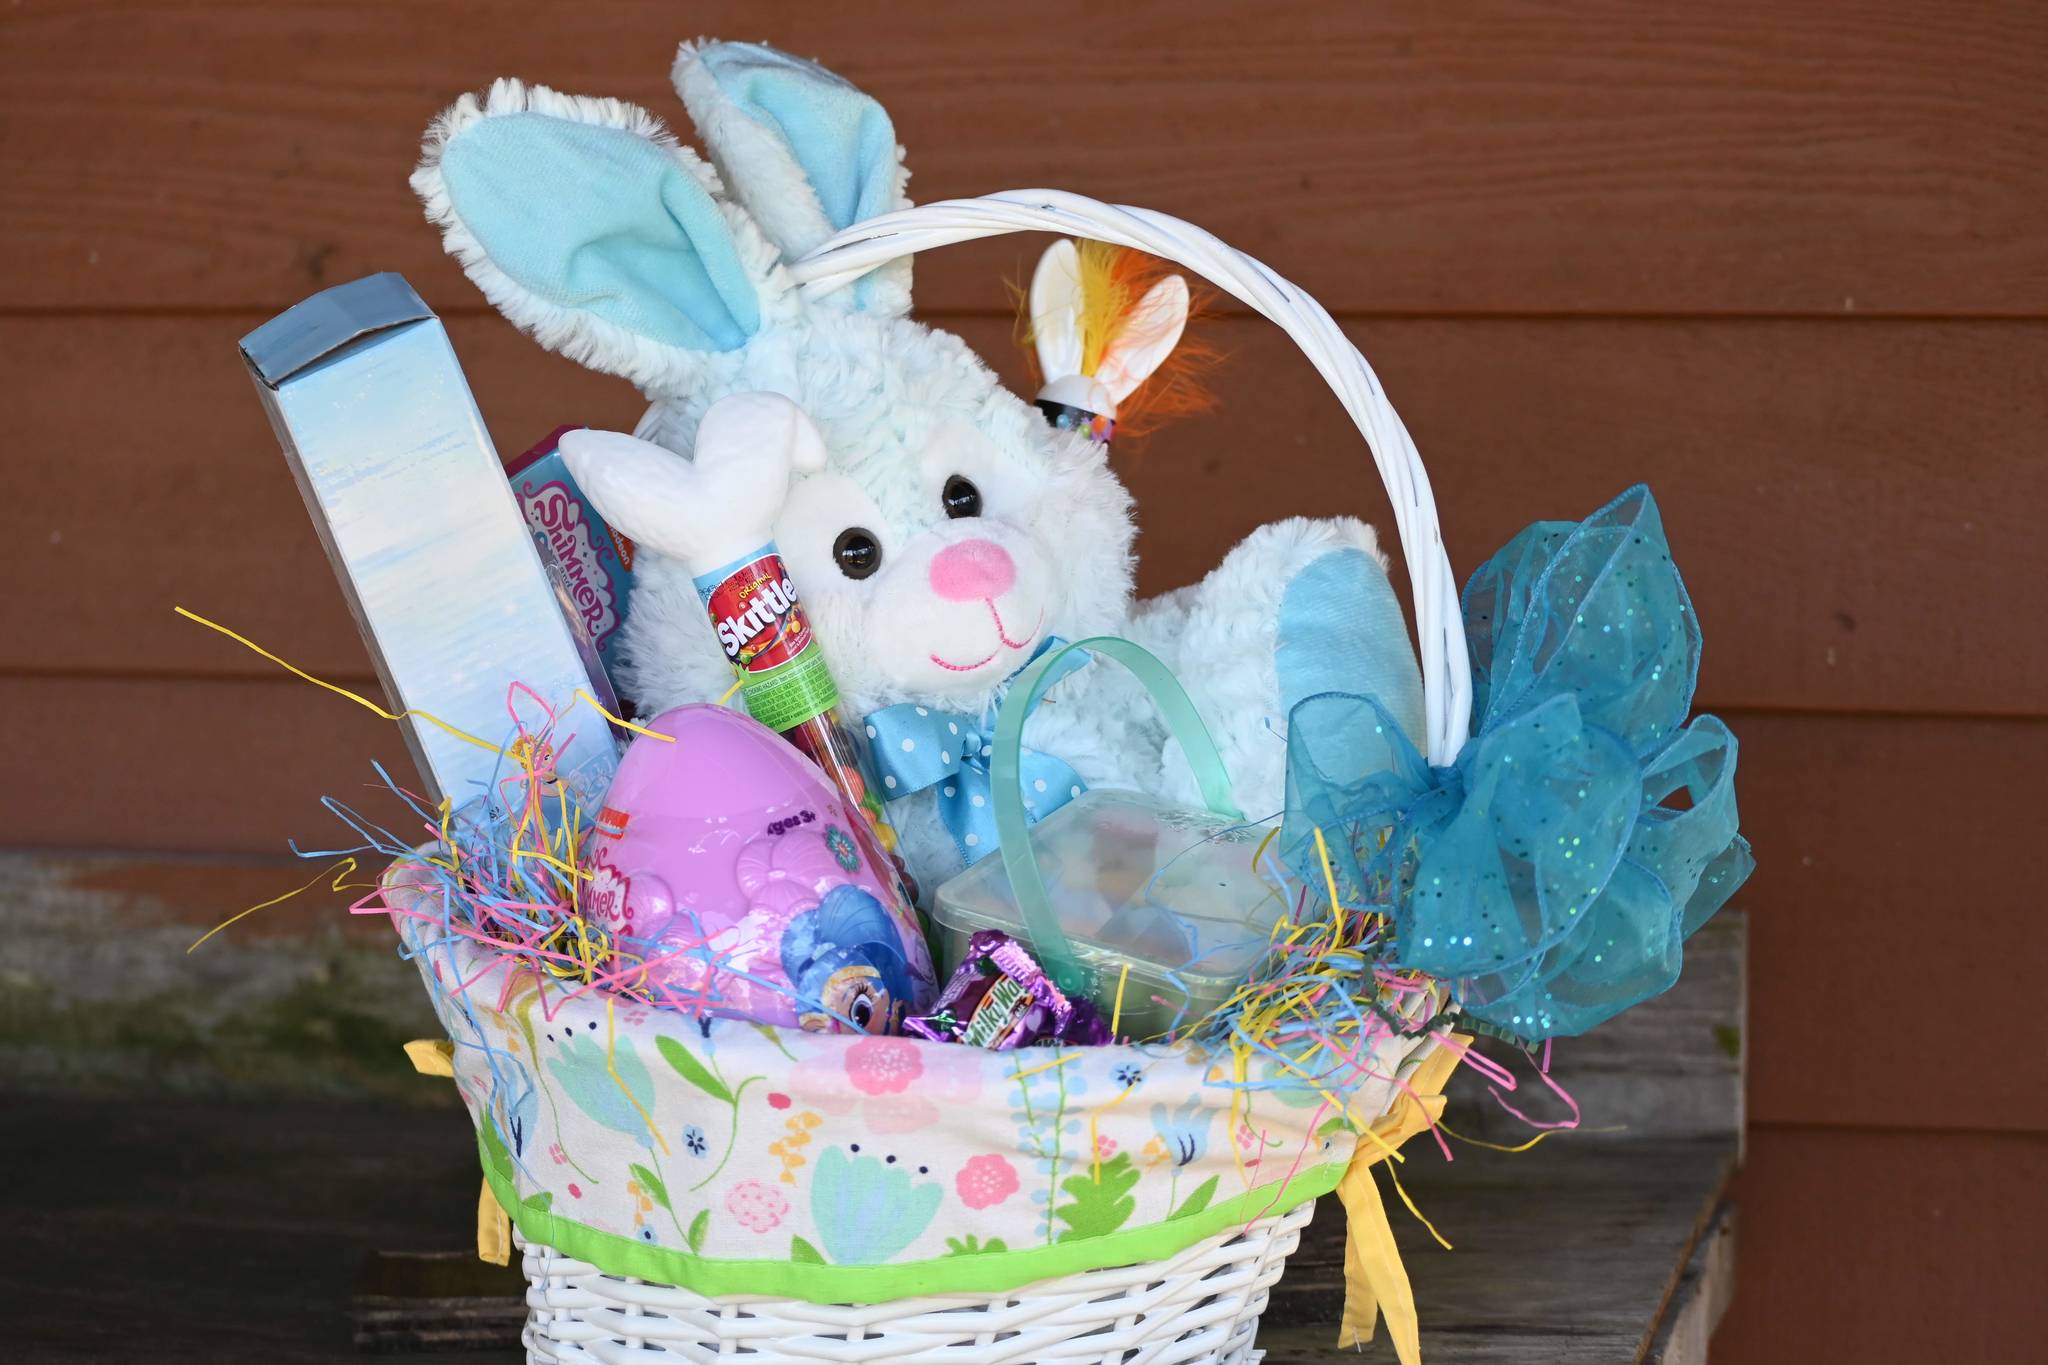 Easter baskets still available despite sale cancelation